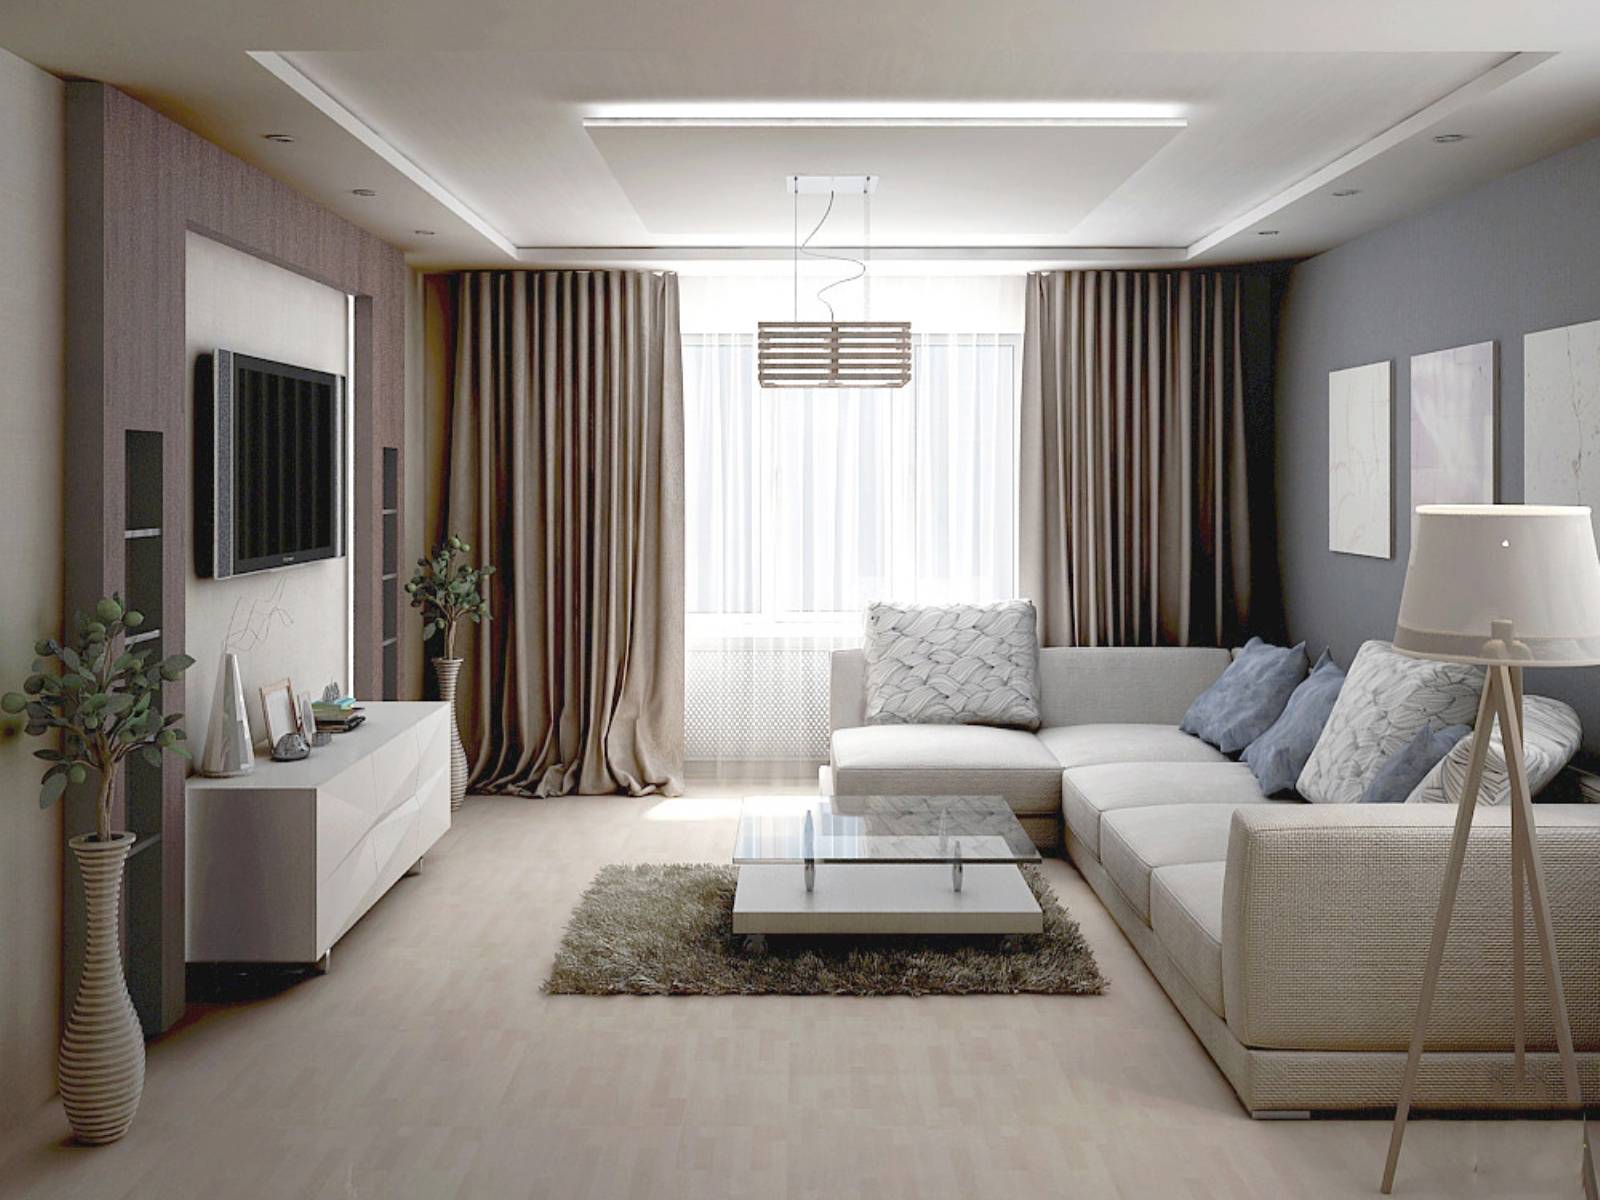 Ремонт зала в обычной квартире фото: дизайн интерьера гостиной, красивое оформление и стандартные размеры